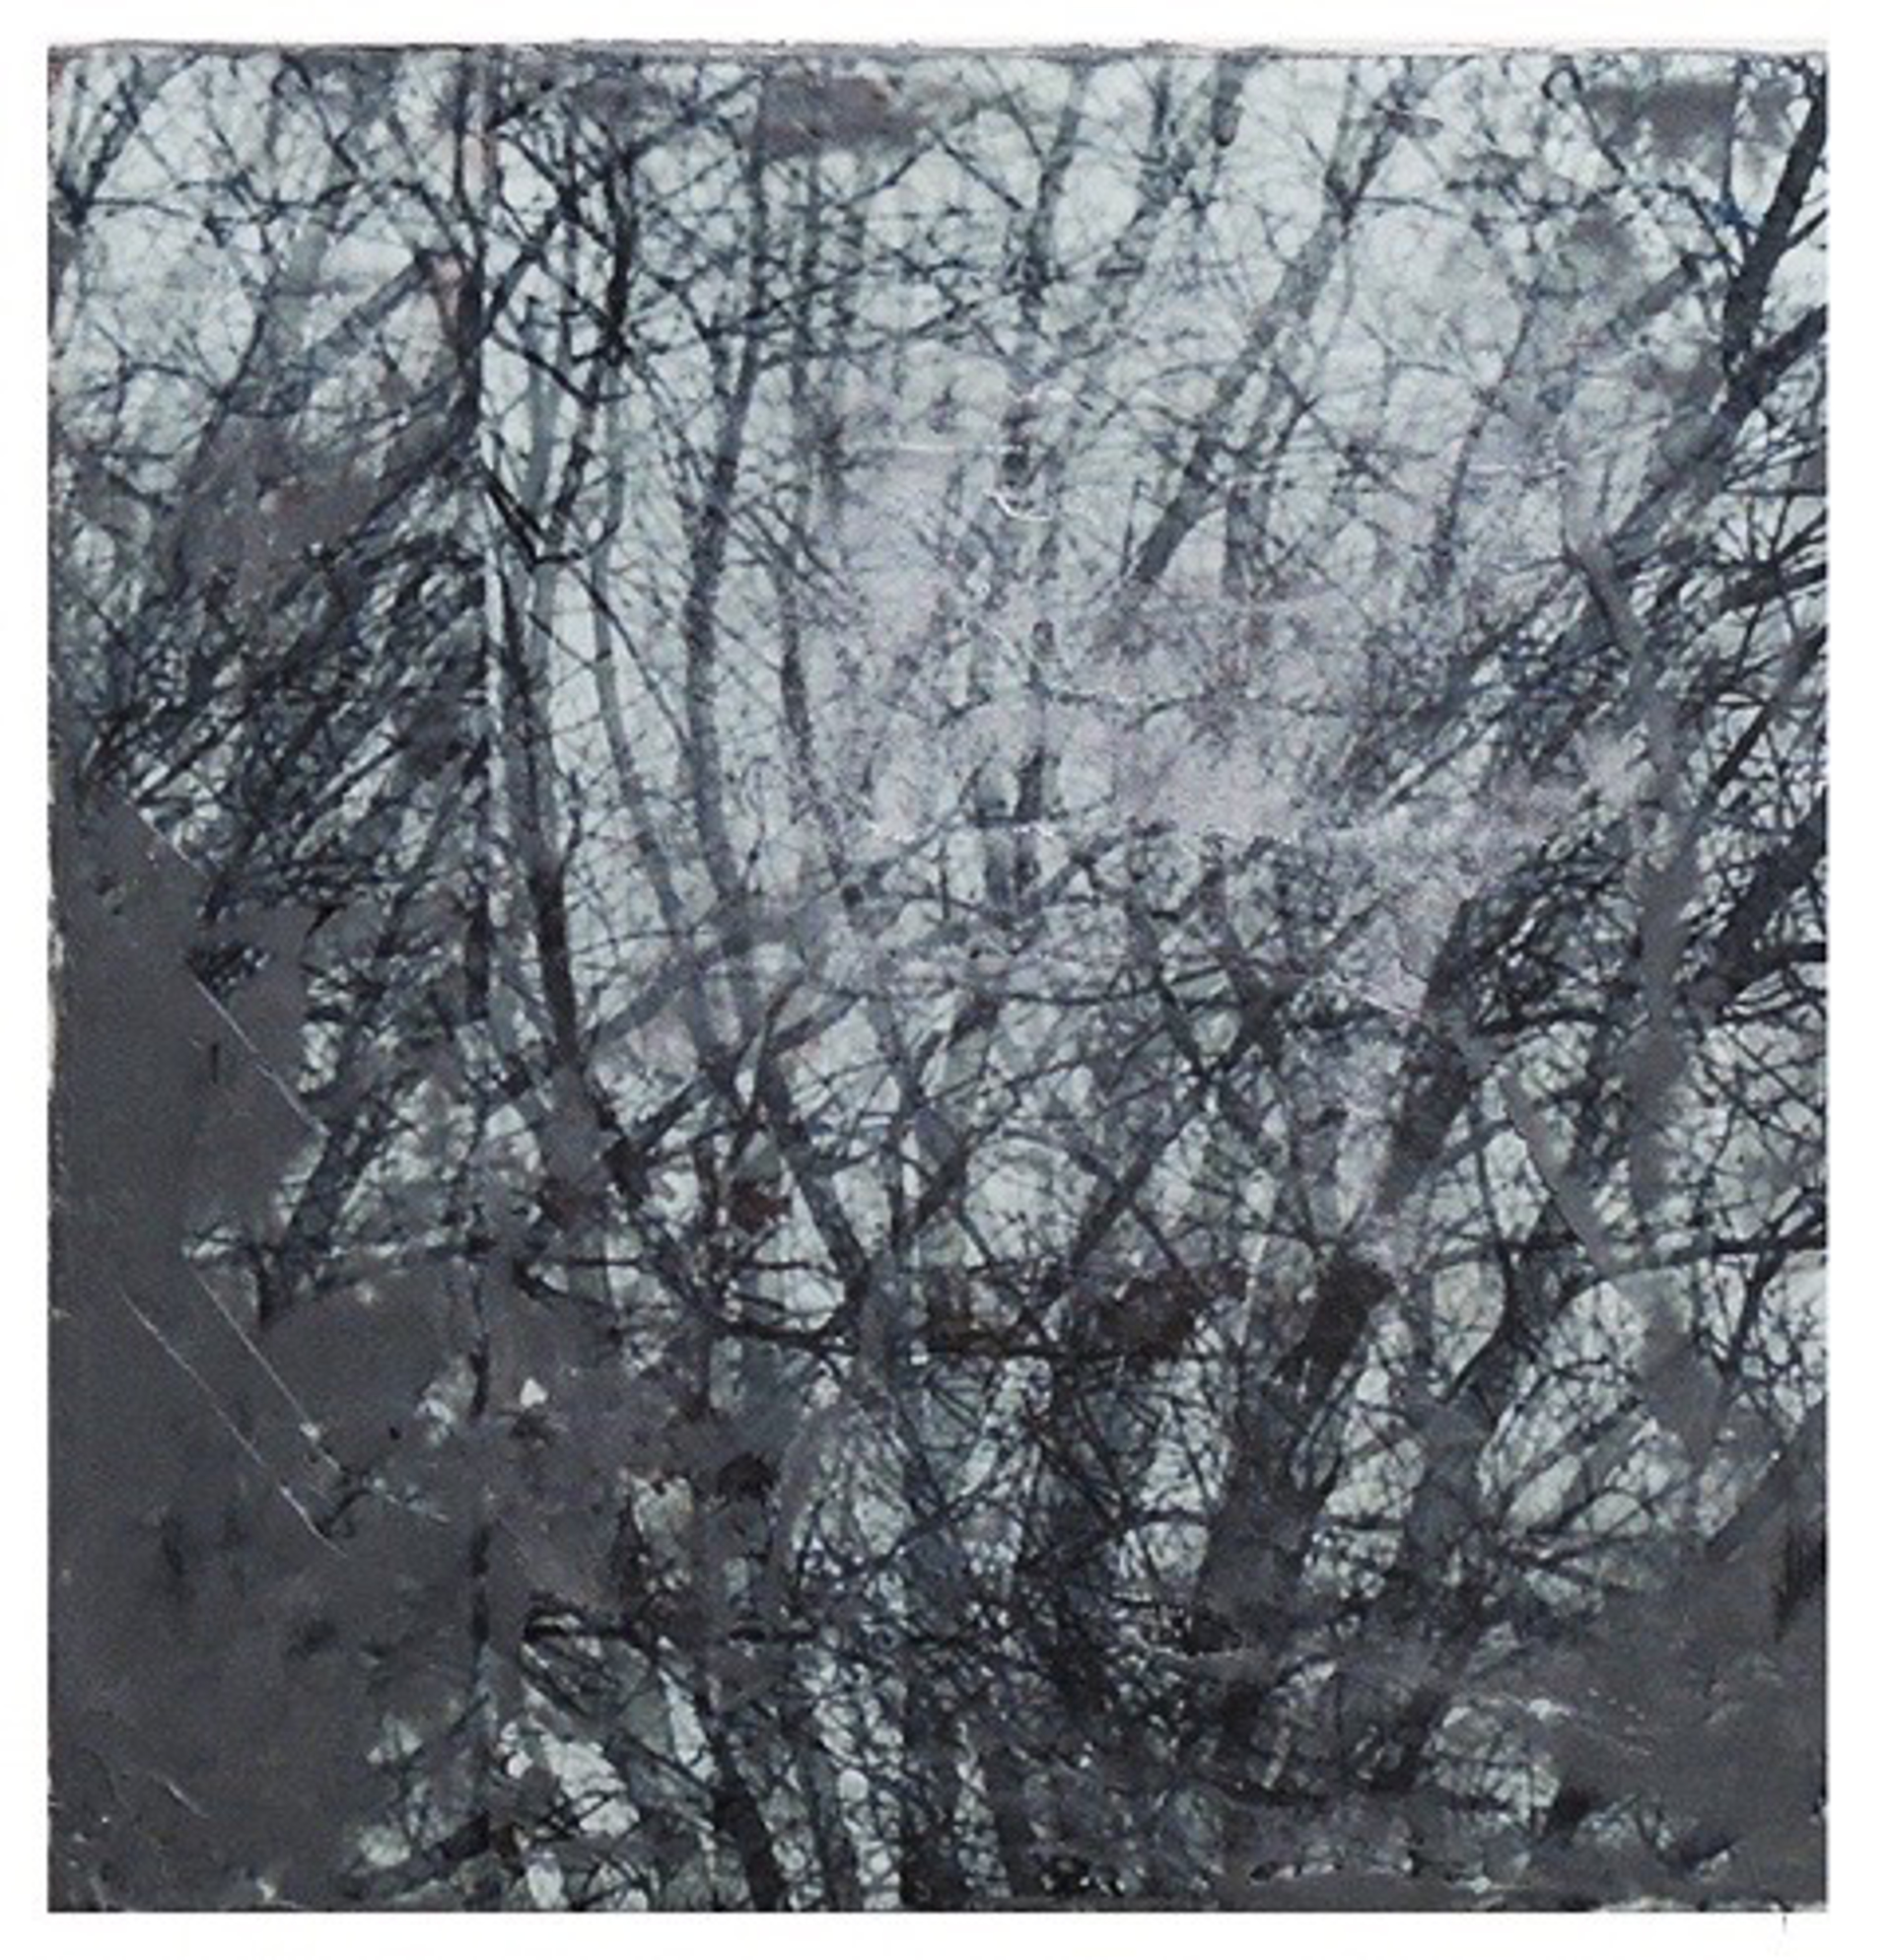 Tree Tile I by Graceann Warn